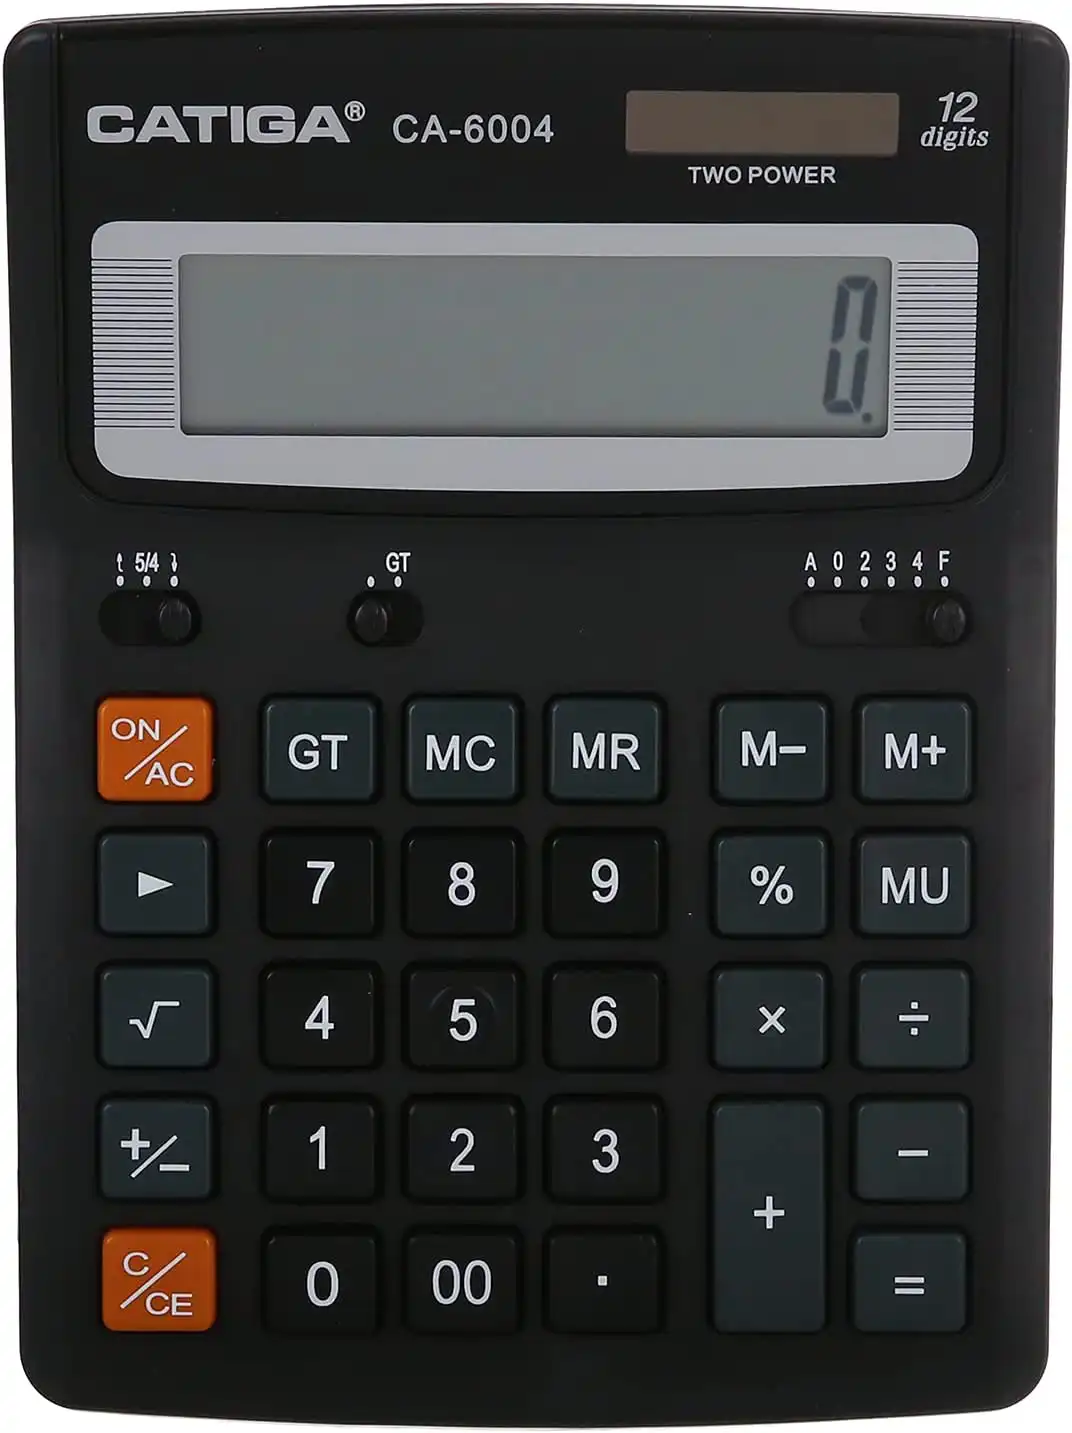 الة حاسبة الكترونية من كاتيجا - CA-6004